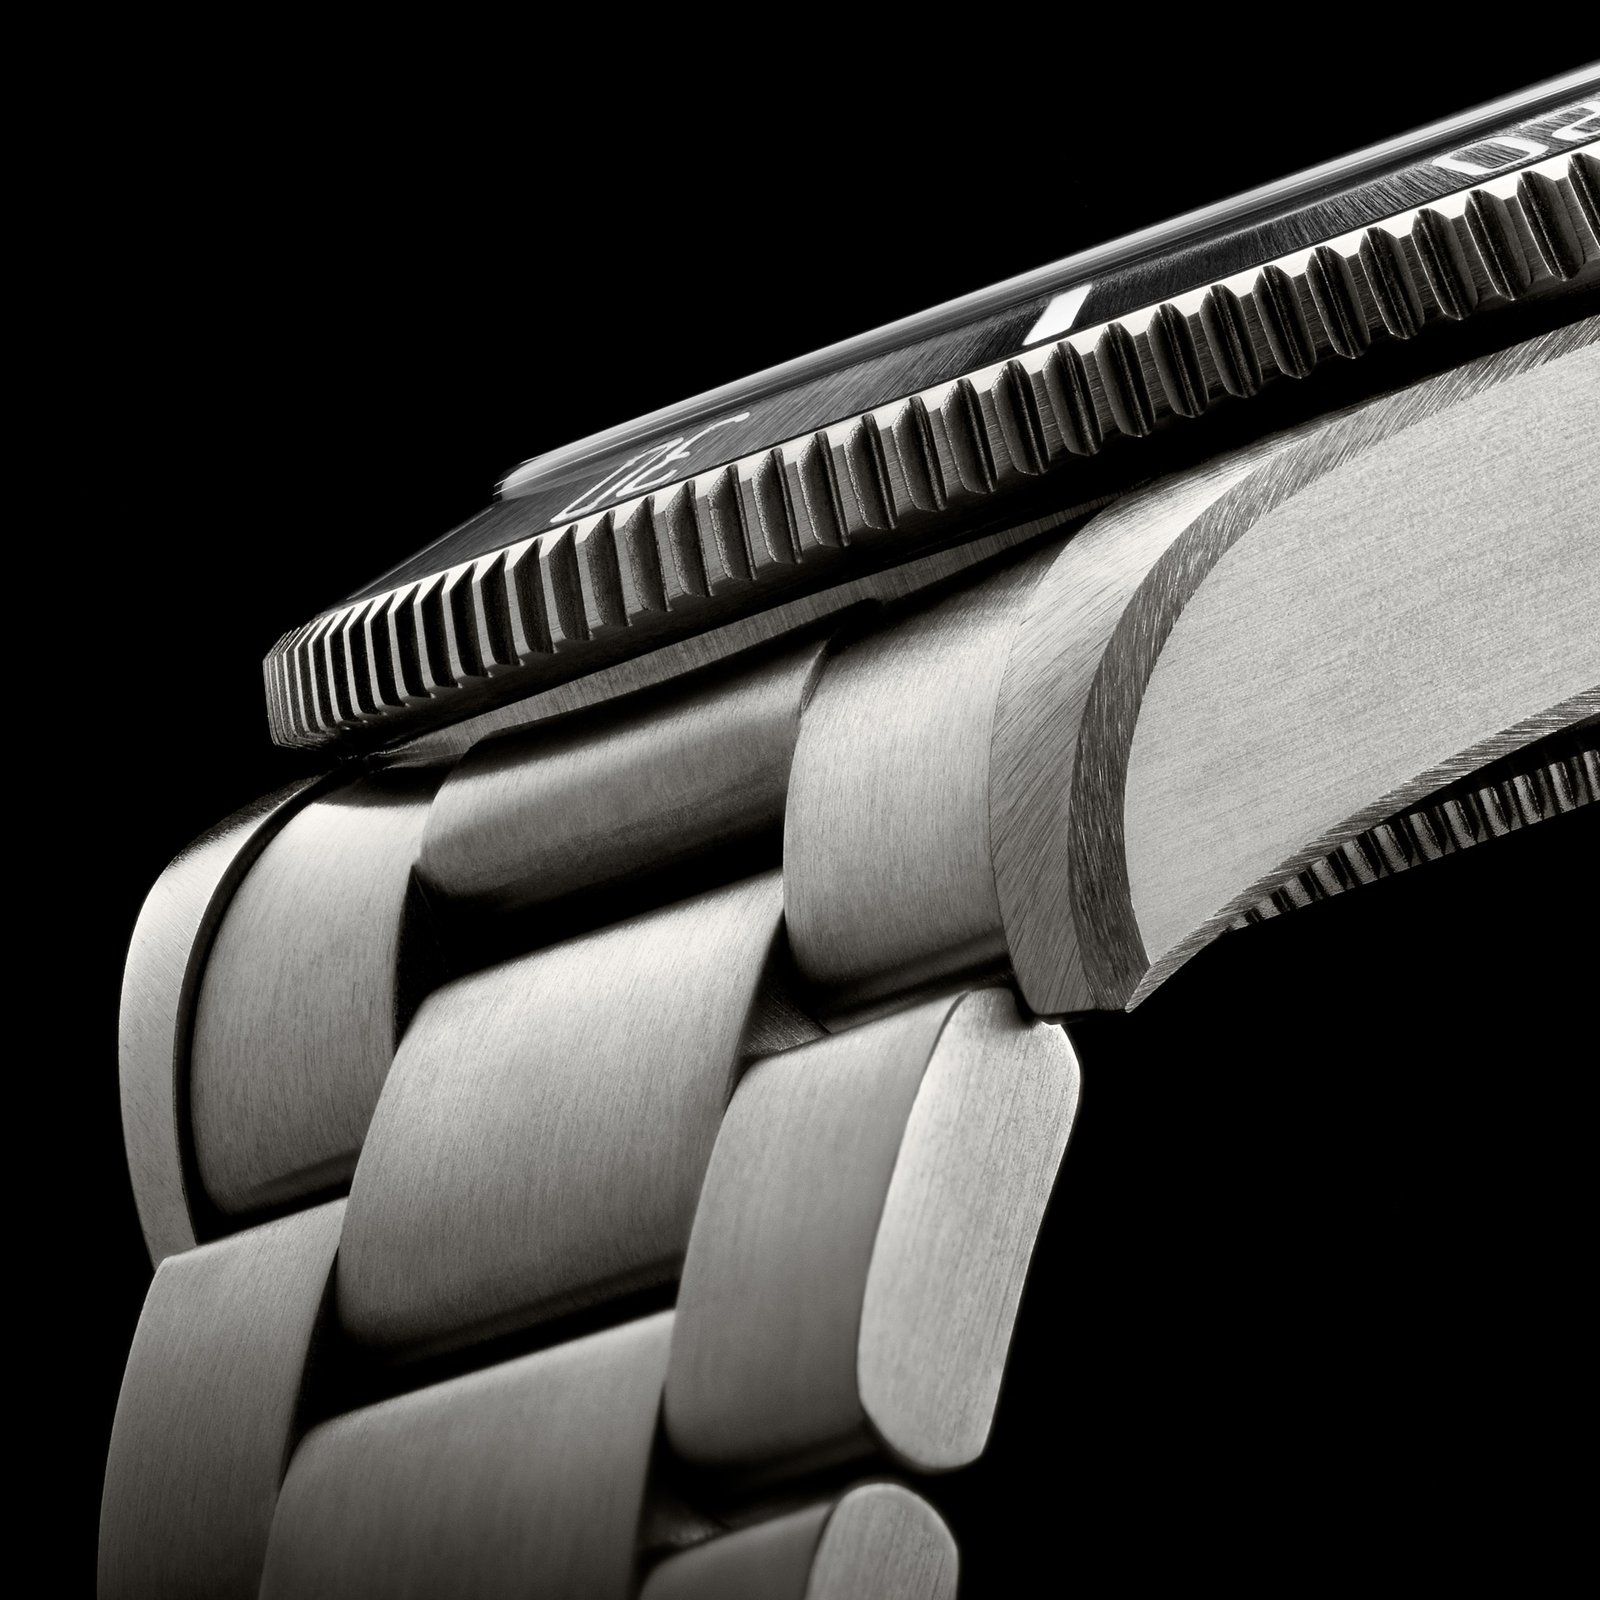 Tudor Pelagos 39: A Tool Watch For Smaller Wrists Or A Hot Trend?